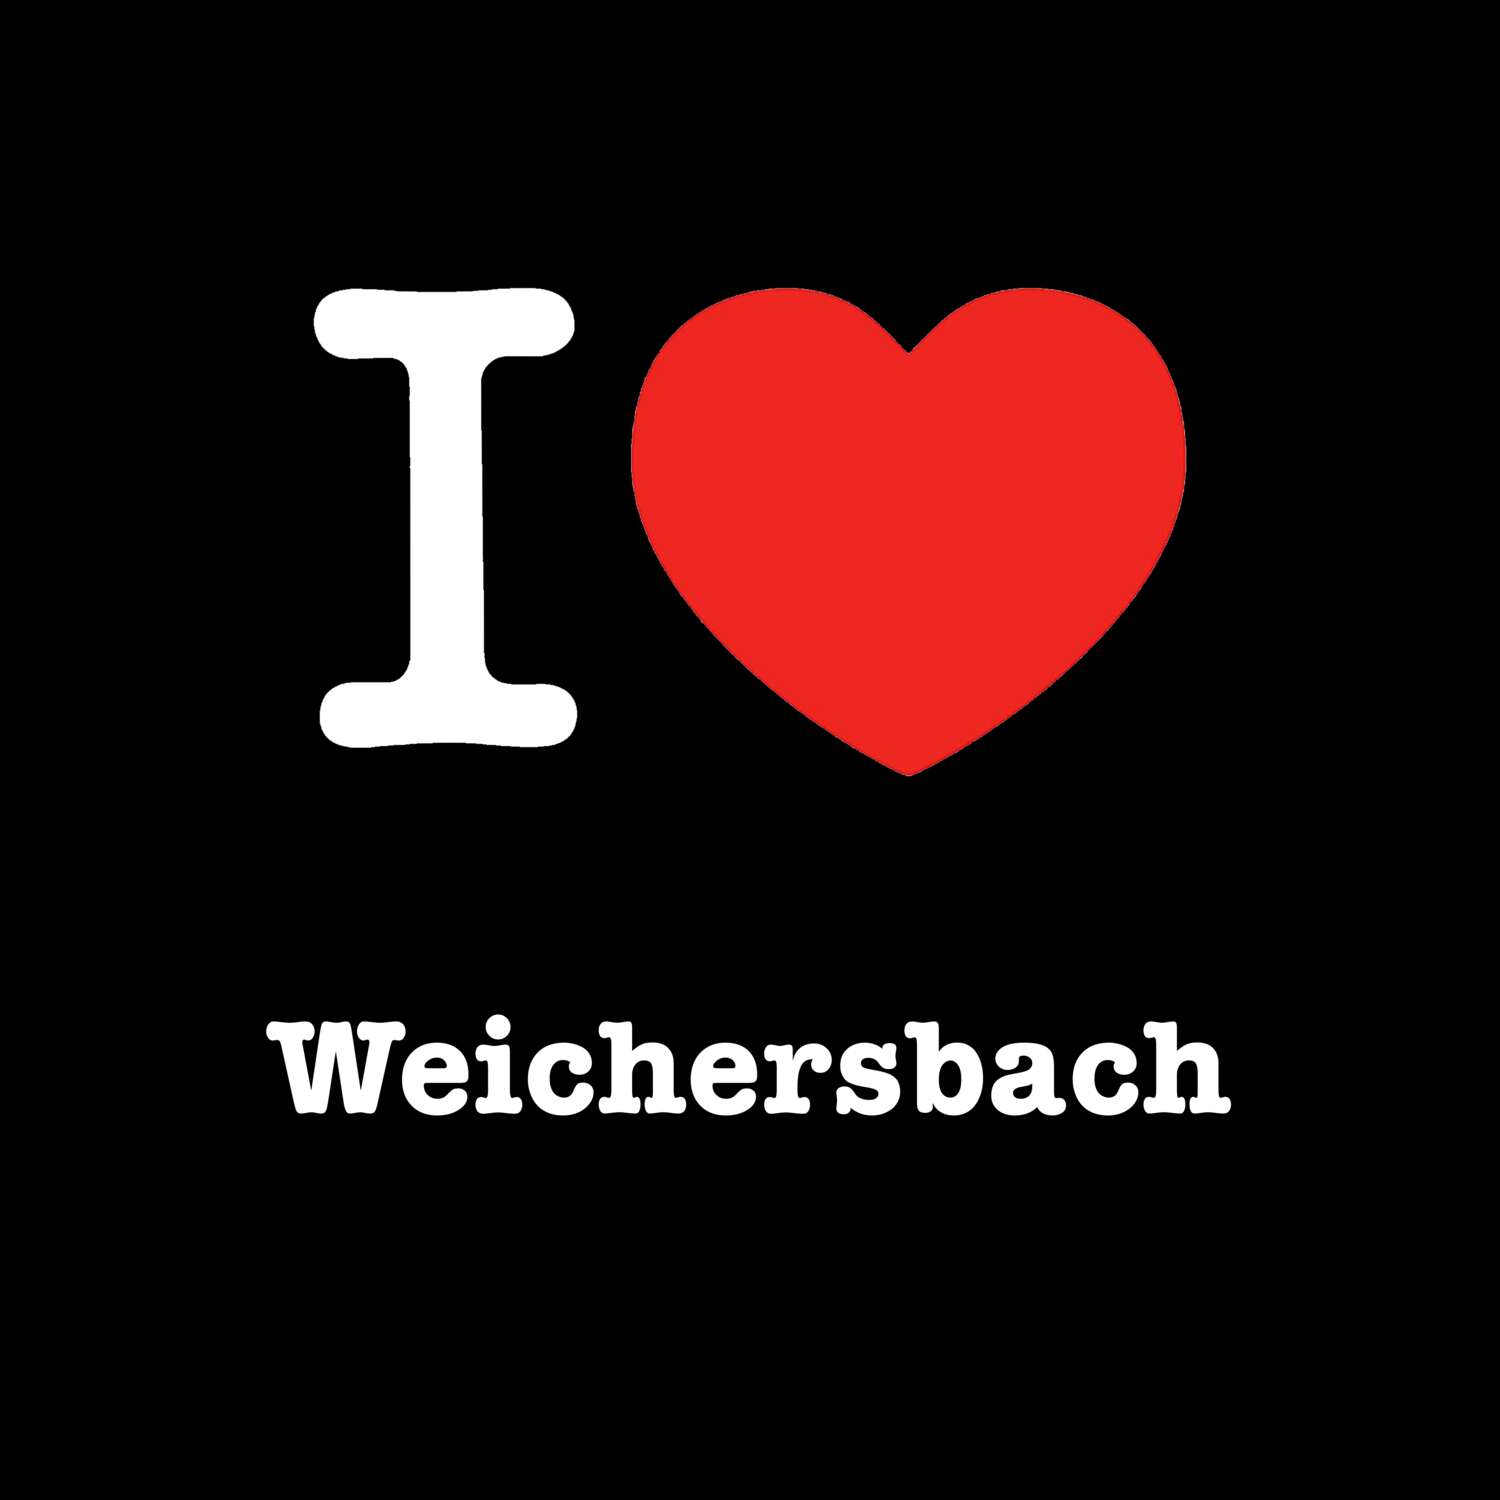 Weichersbach T-Shirt »I love«